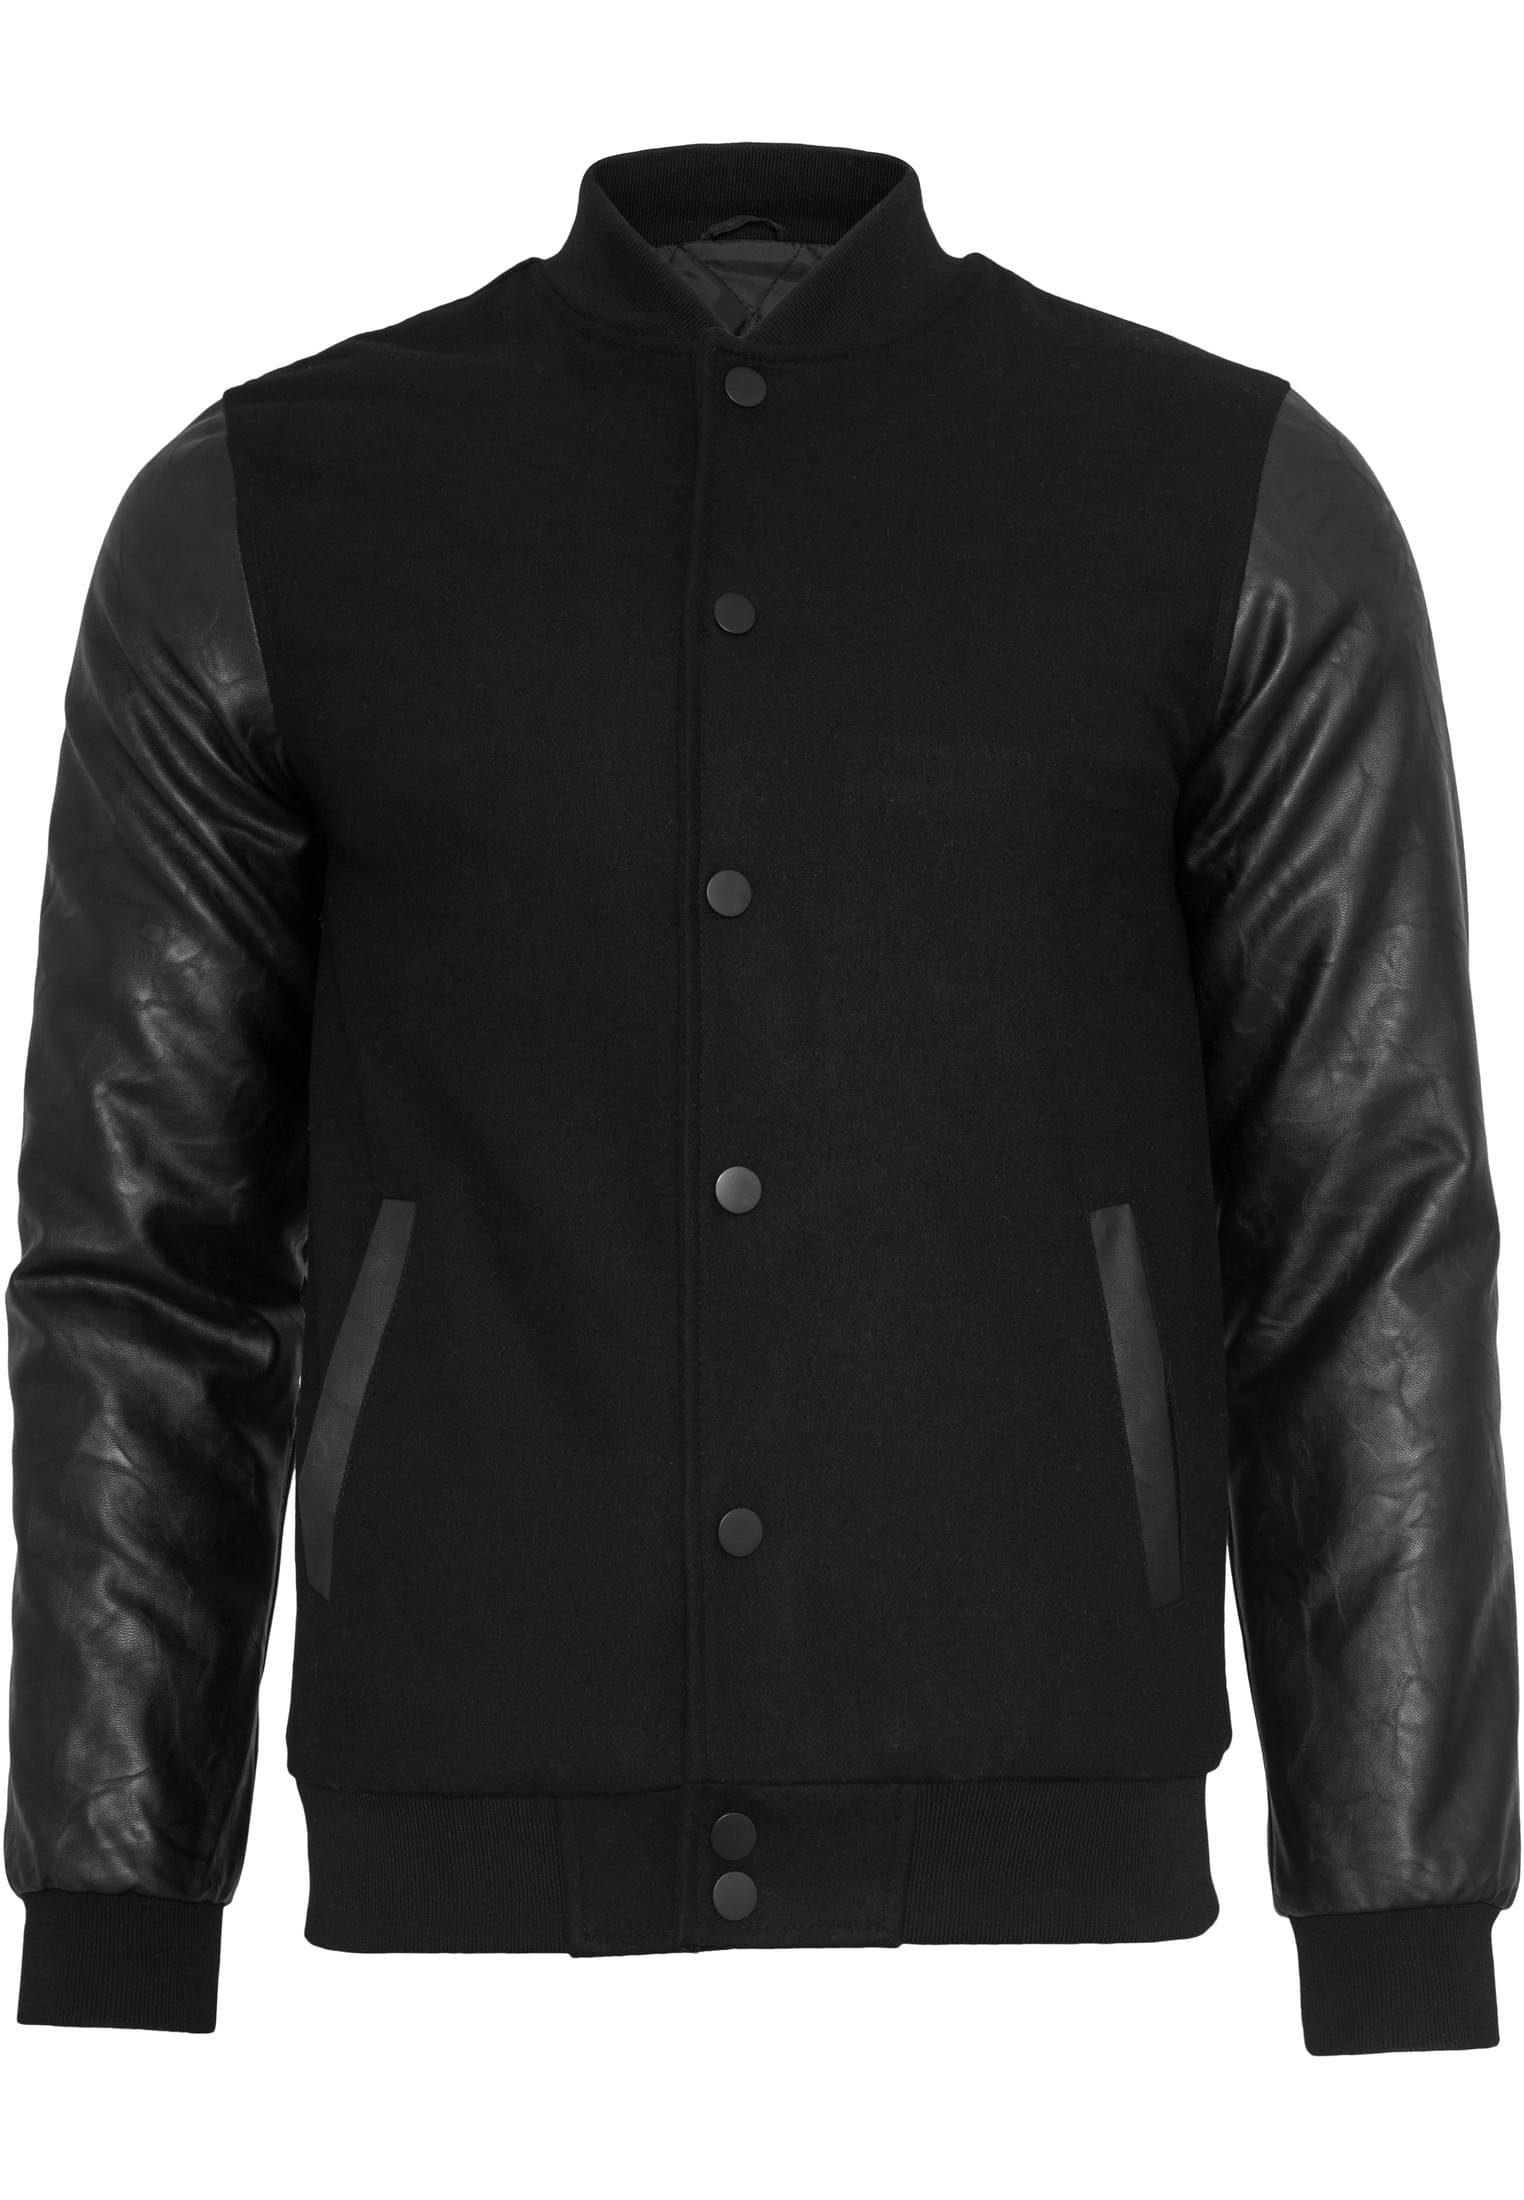 URBAN CLASSICS Outdoorjacke Herren Oldschool College Jacket (1-St) black/black